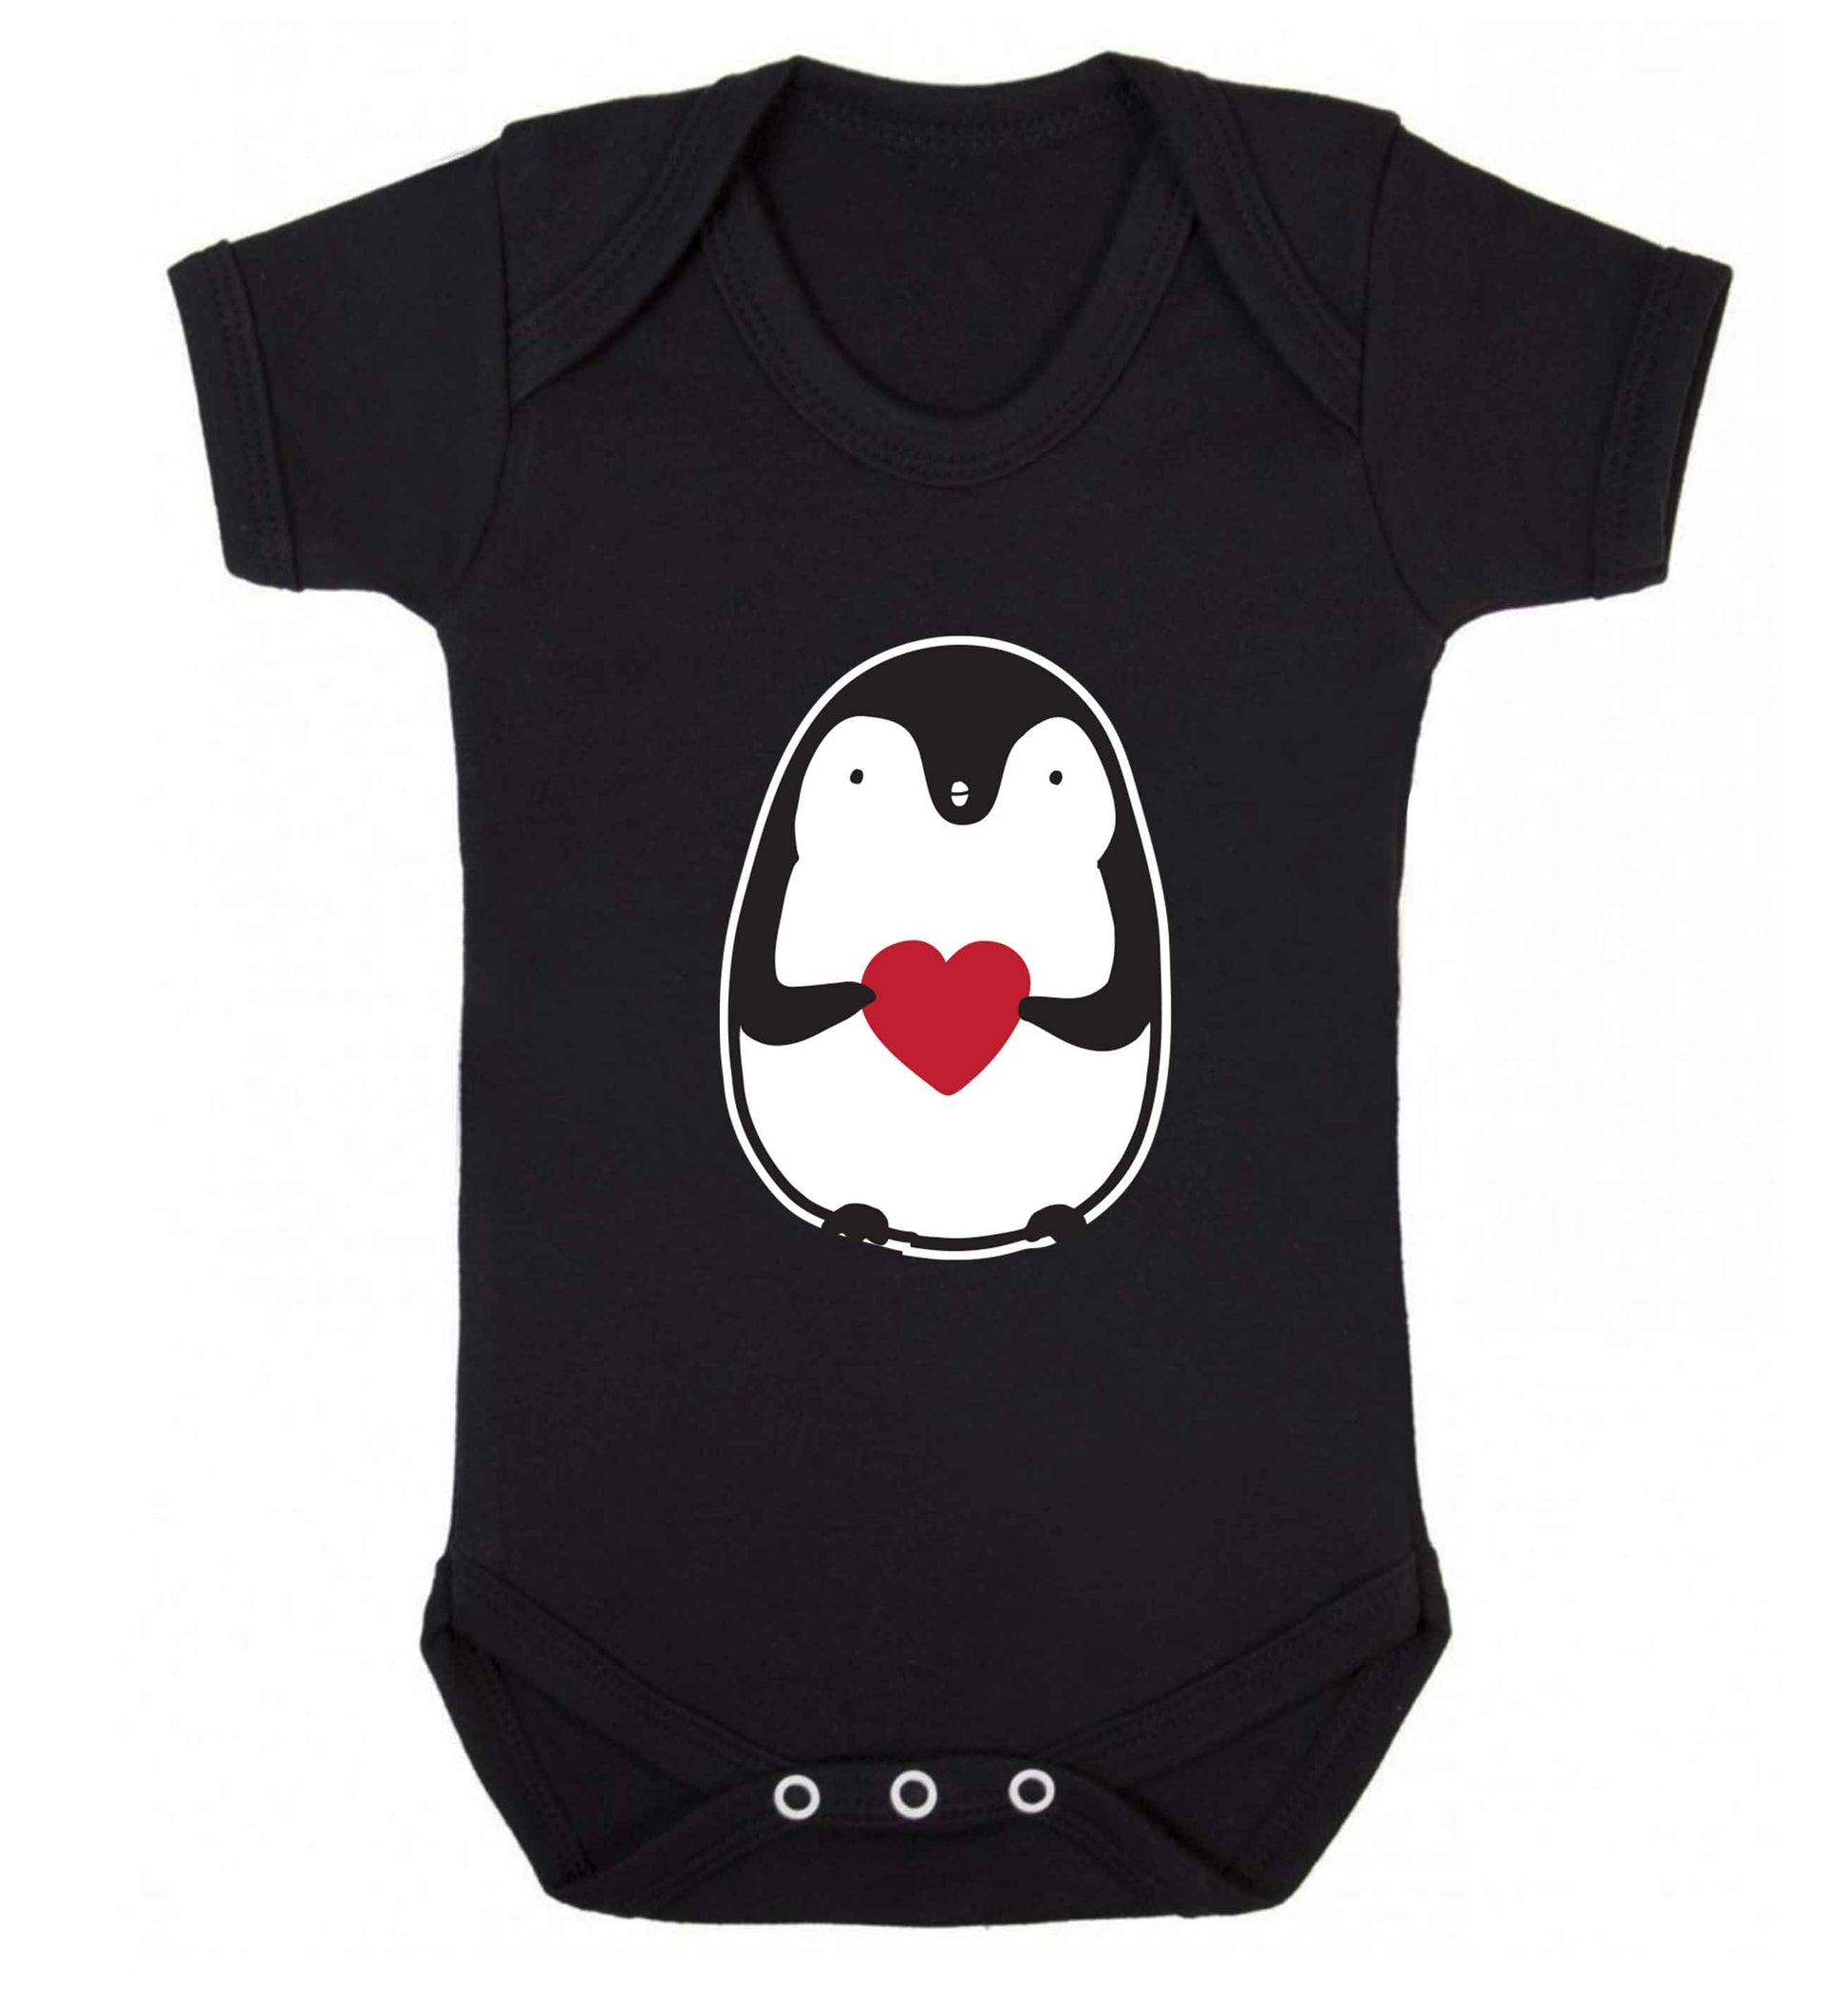 Cute penguin heart baby vest black 18-24 months